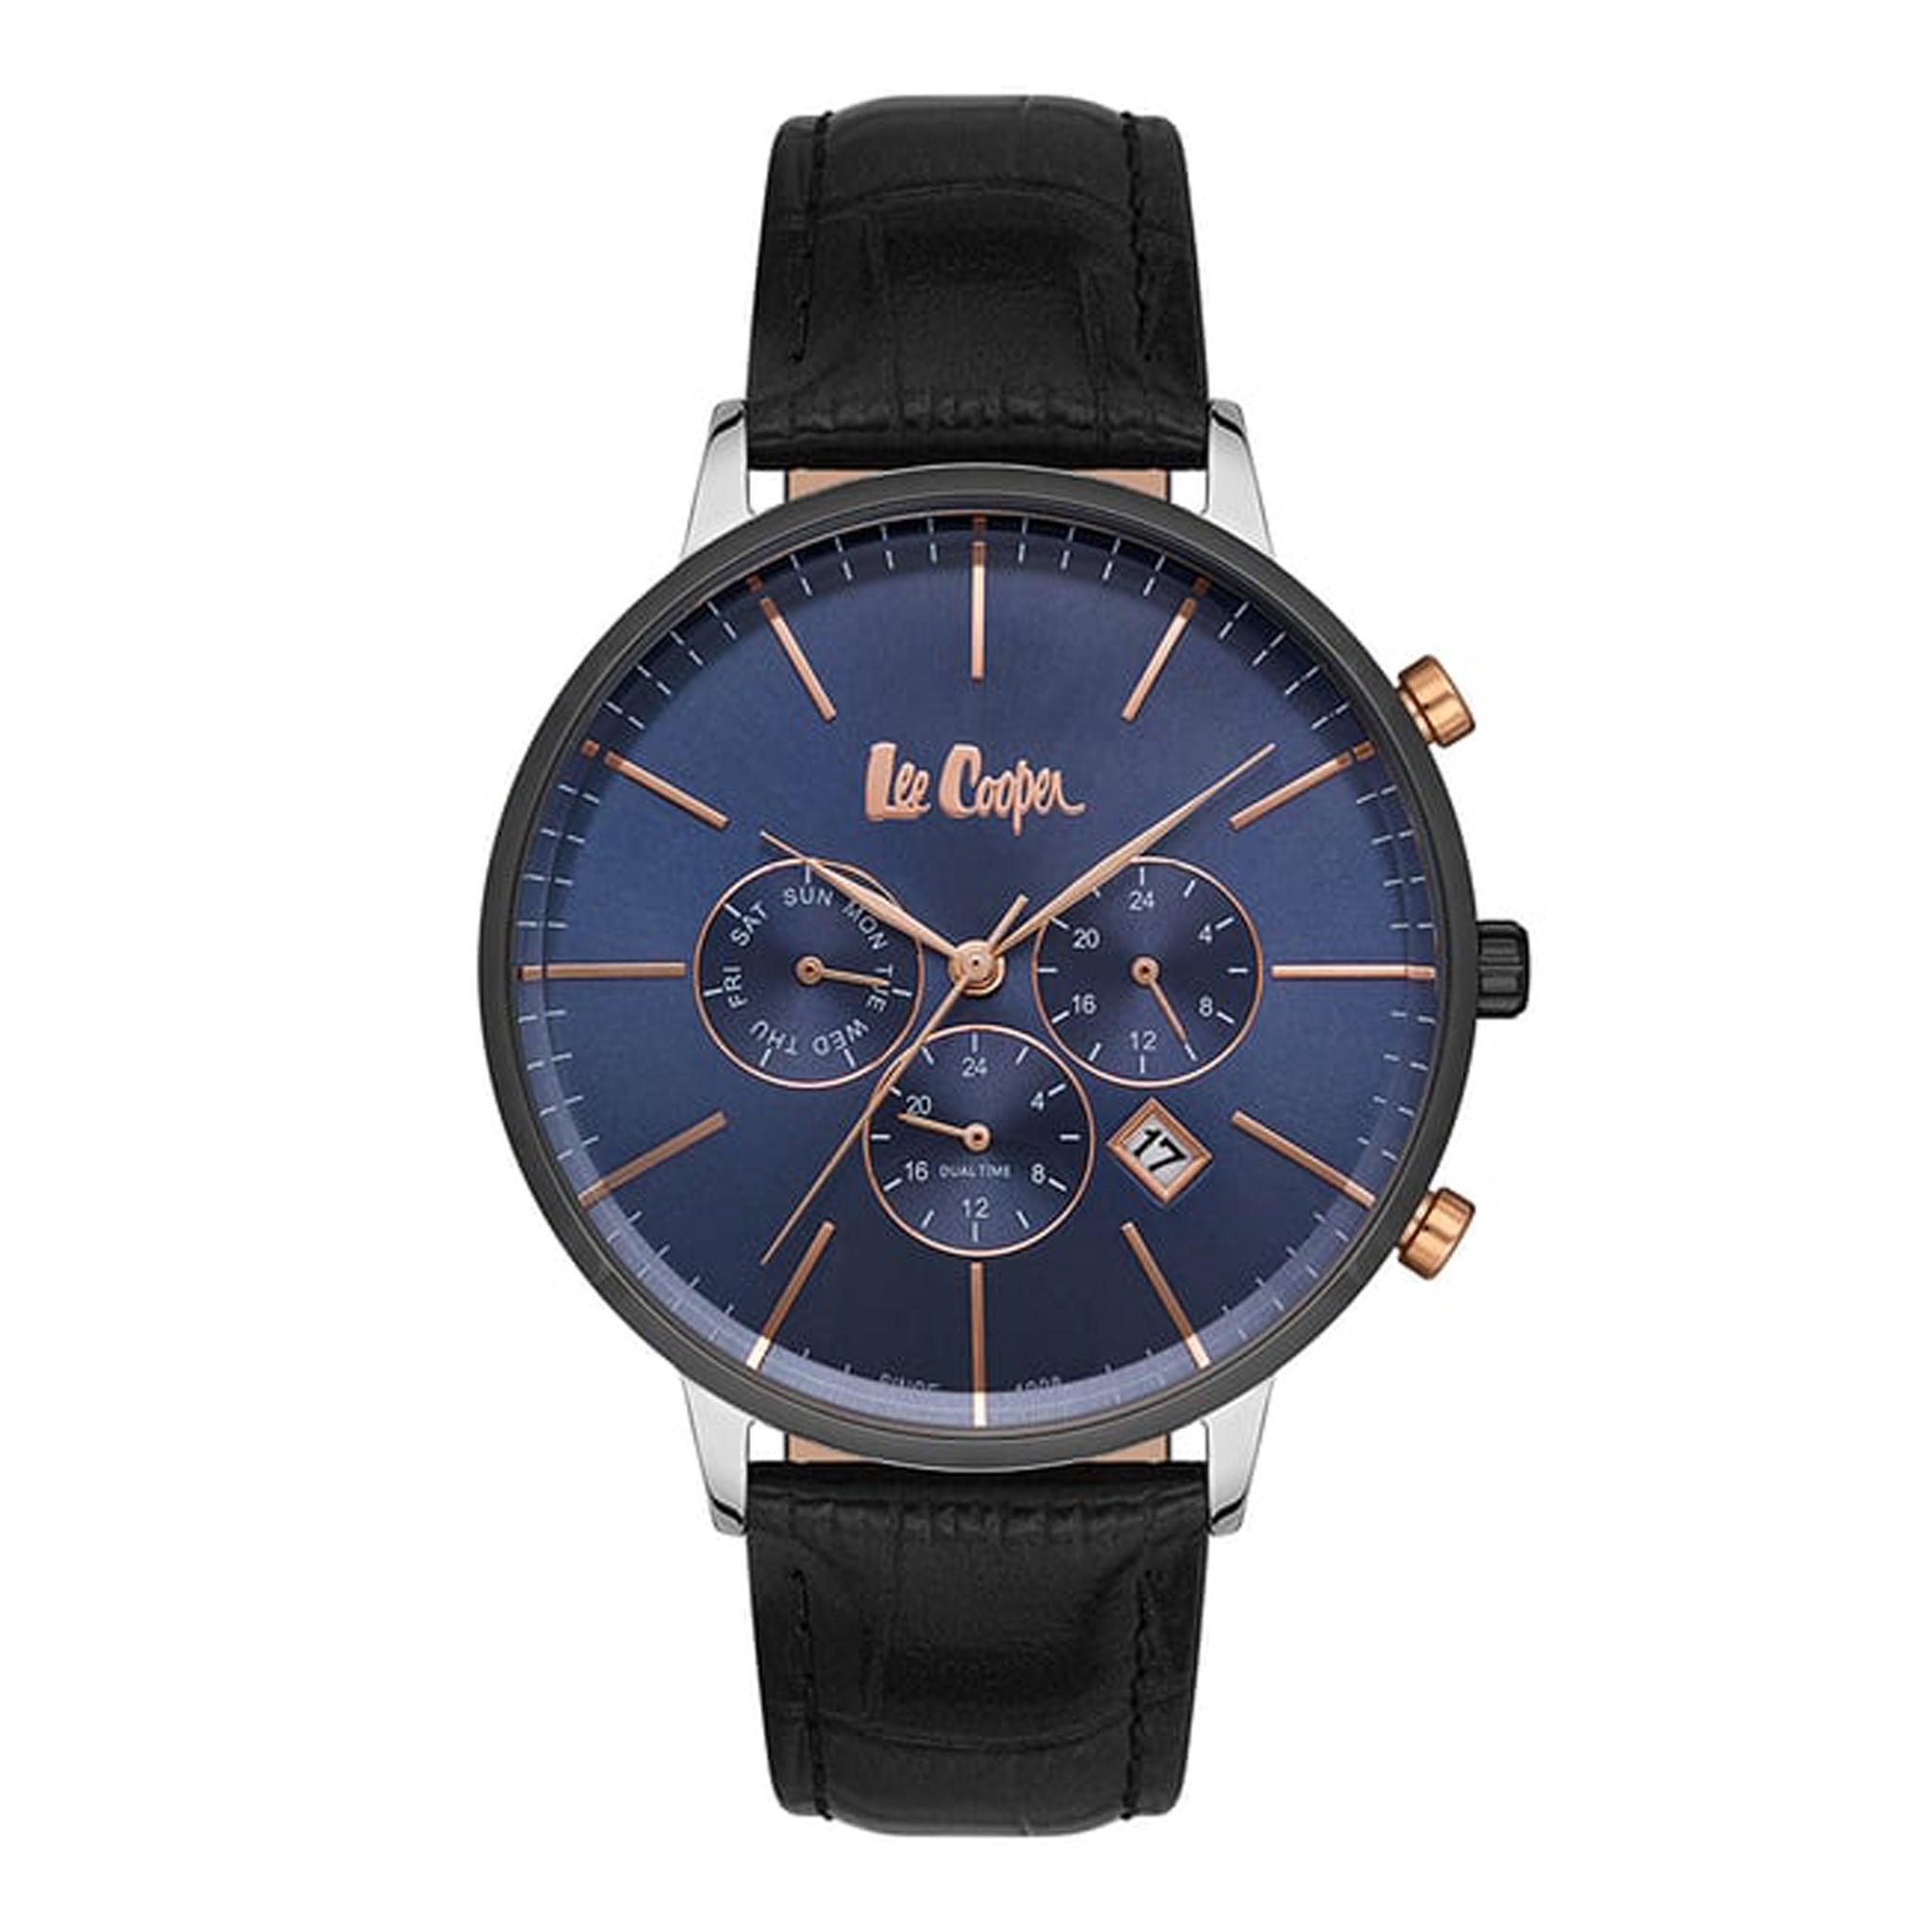 ساعة يد رجالية - أسود و مينا باللون الأزرق - بحزام أسود من الجلد الطبيعي لي كوبر Lee Cooper Men's Multi Function Blue Dial Watch